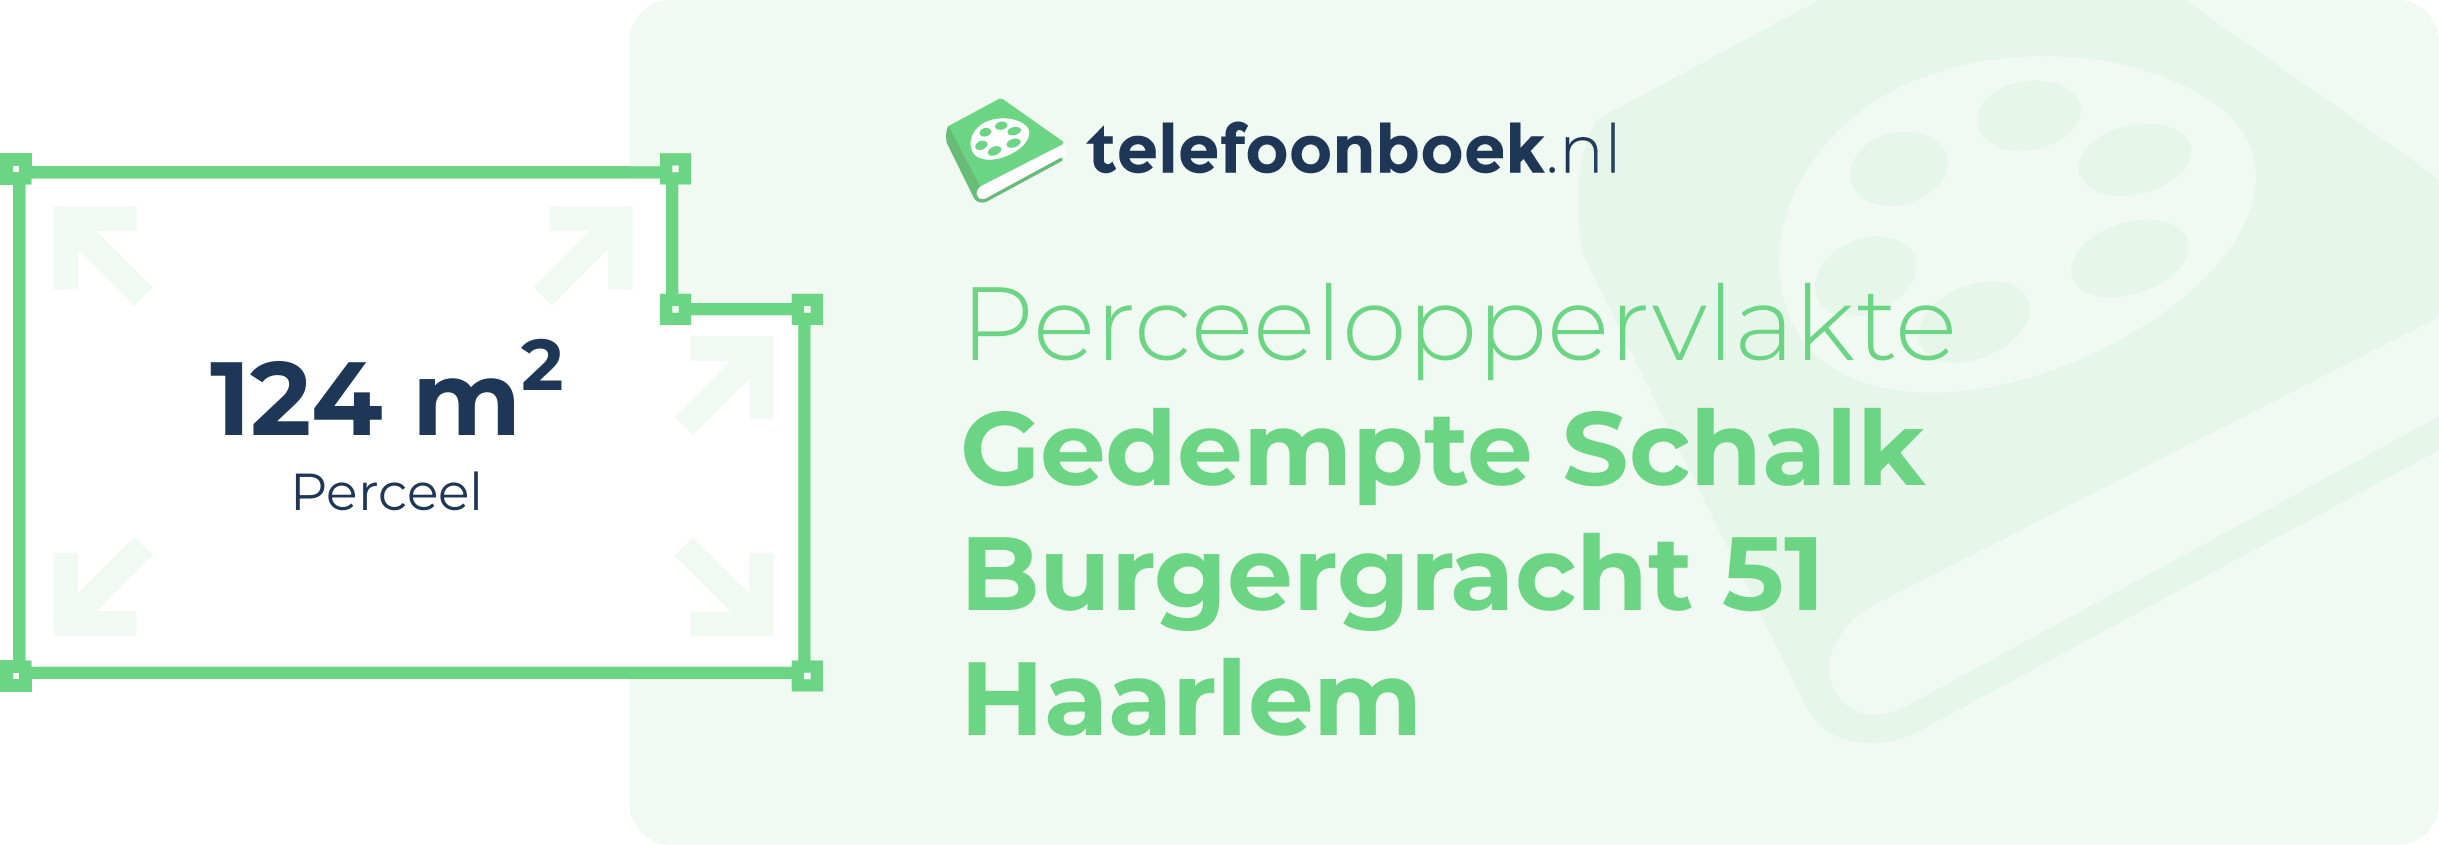 Perceeloppervlakte Gedempte Schalk Burgergracht 51 Haarlem